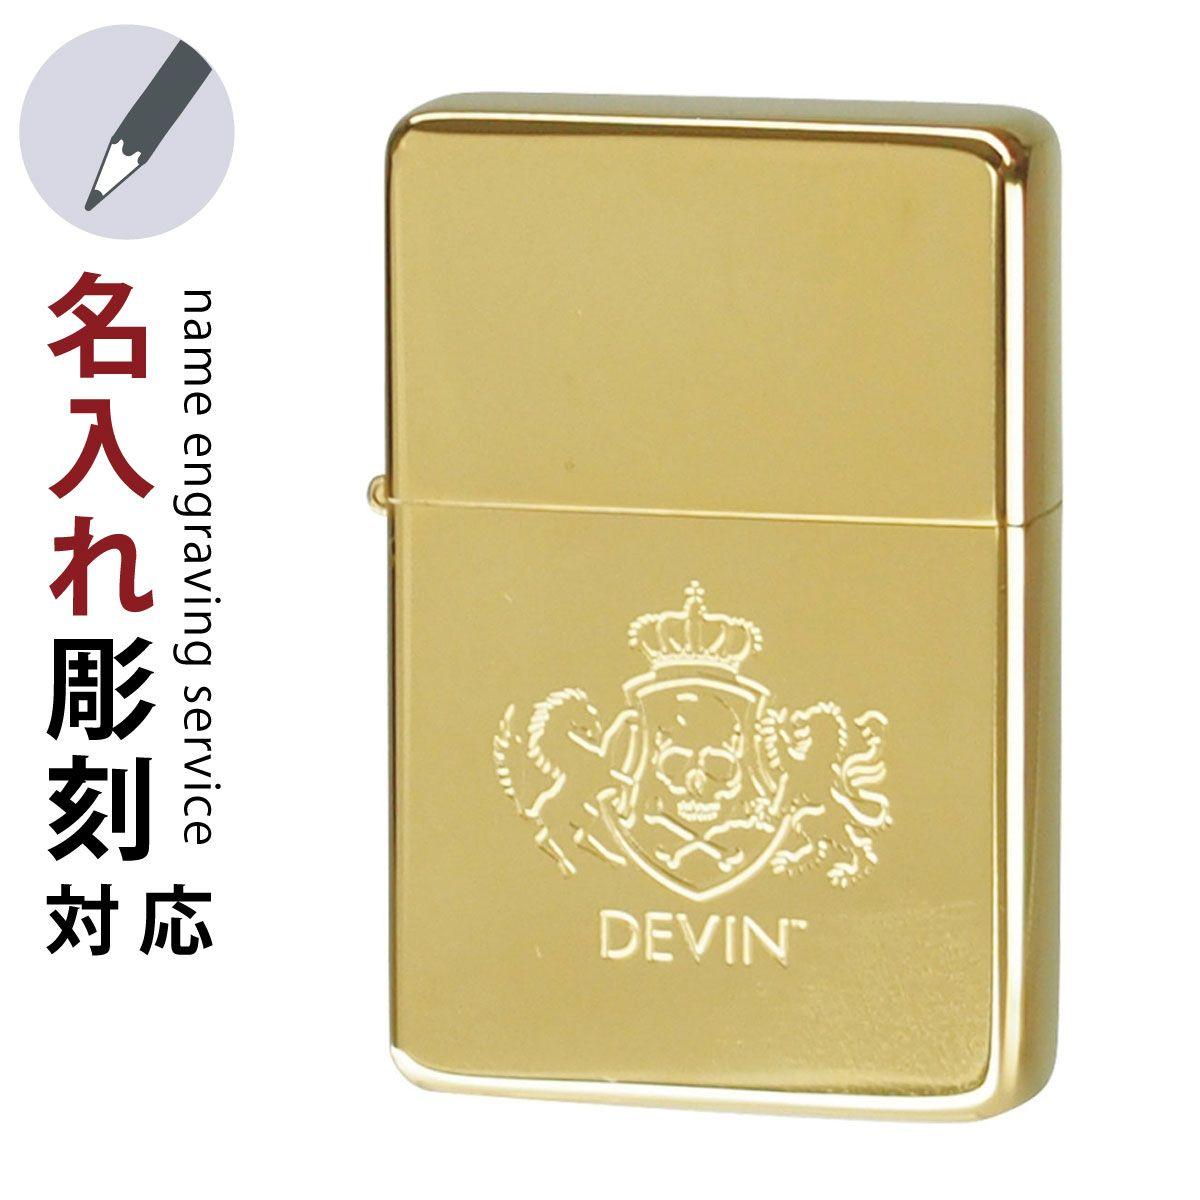 Devin Logo - Lighterya: Oil Lighter Simple DEVIN Logo LOGO G Gold Gift Gift Gift